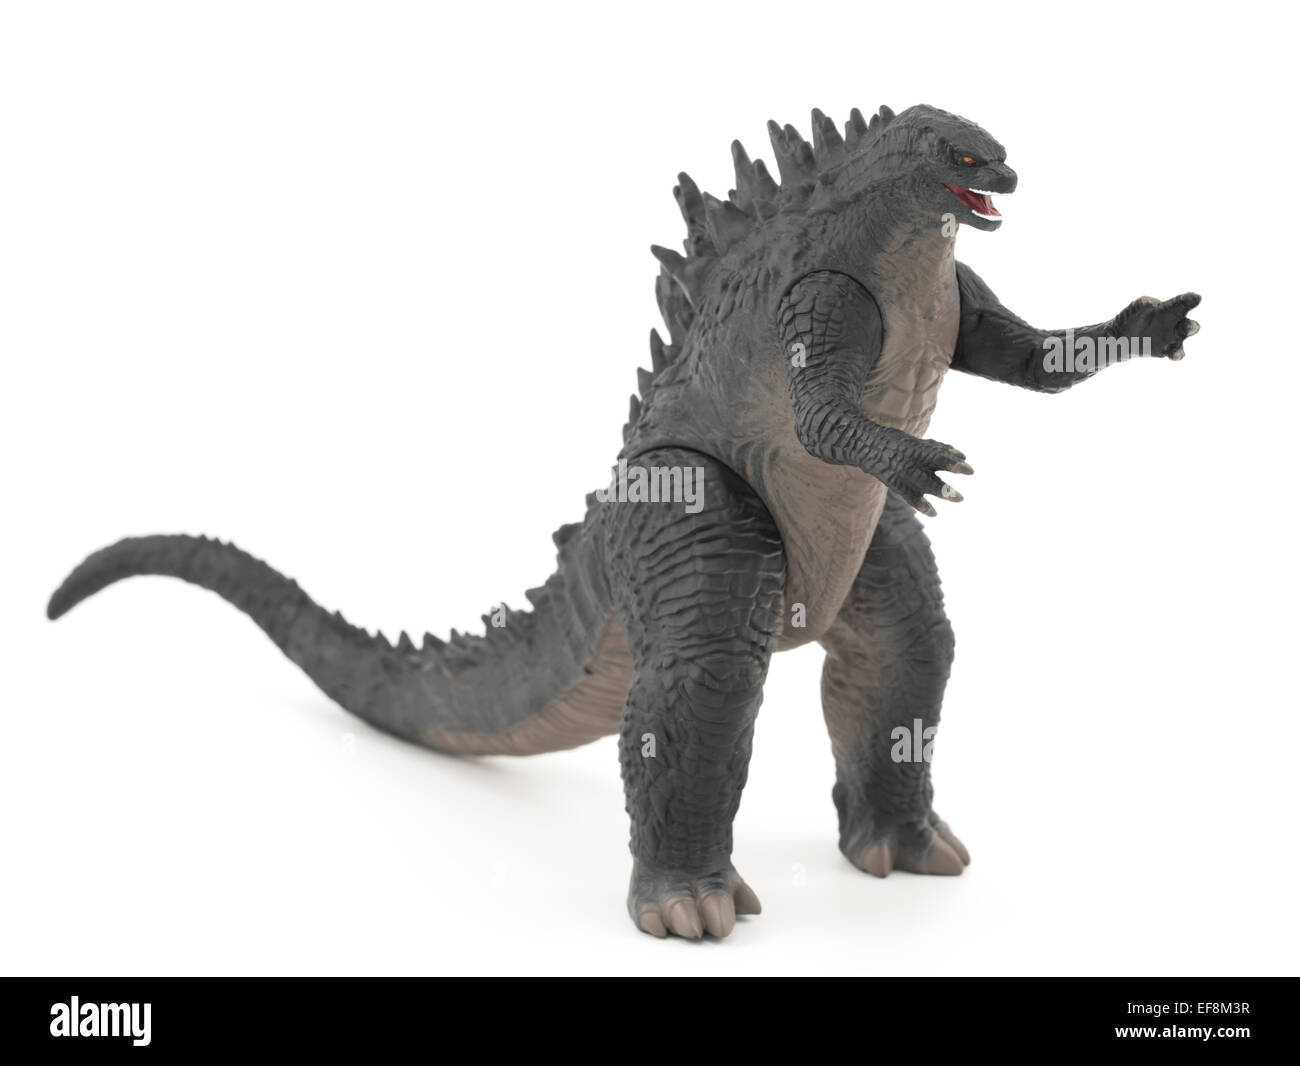 Japanese Godzilla Toy, iconic movie & manga character in Japan Stock Photo